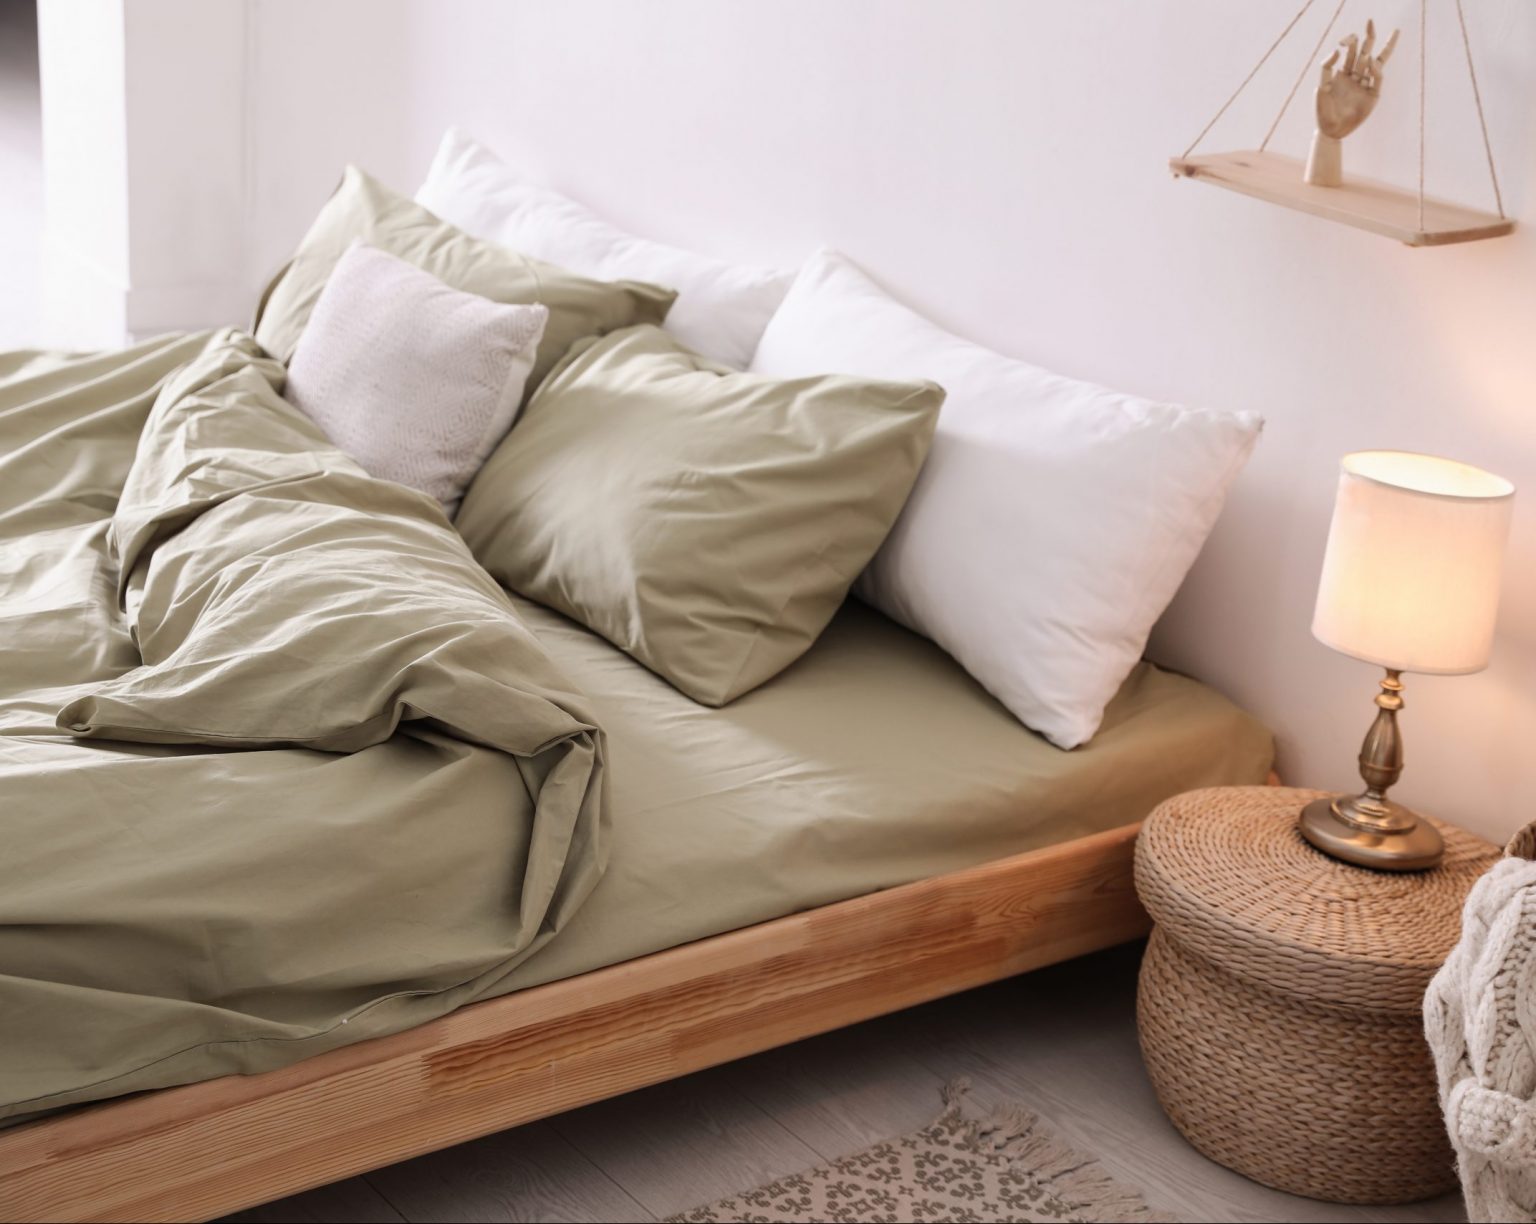 Ein stilvolles Bild von einem Bett, das mit schönen Farben hervorgehobene Bettwaren präsentiert.